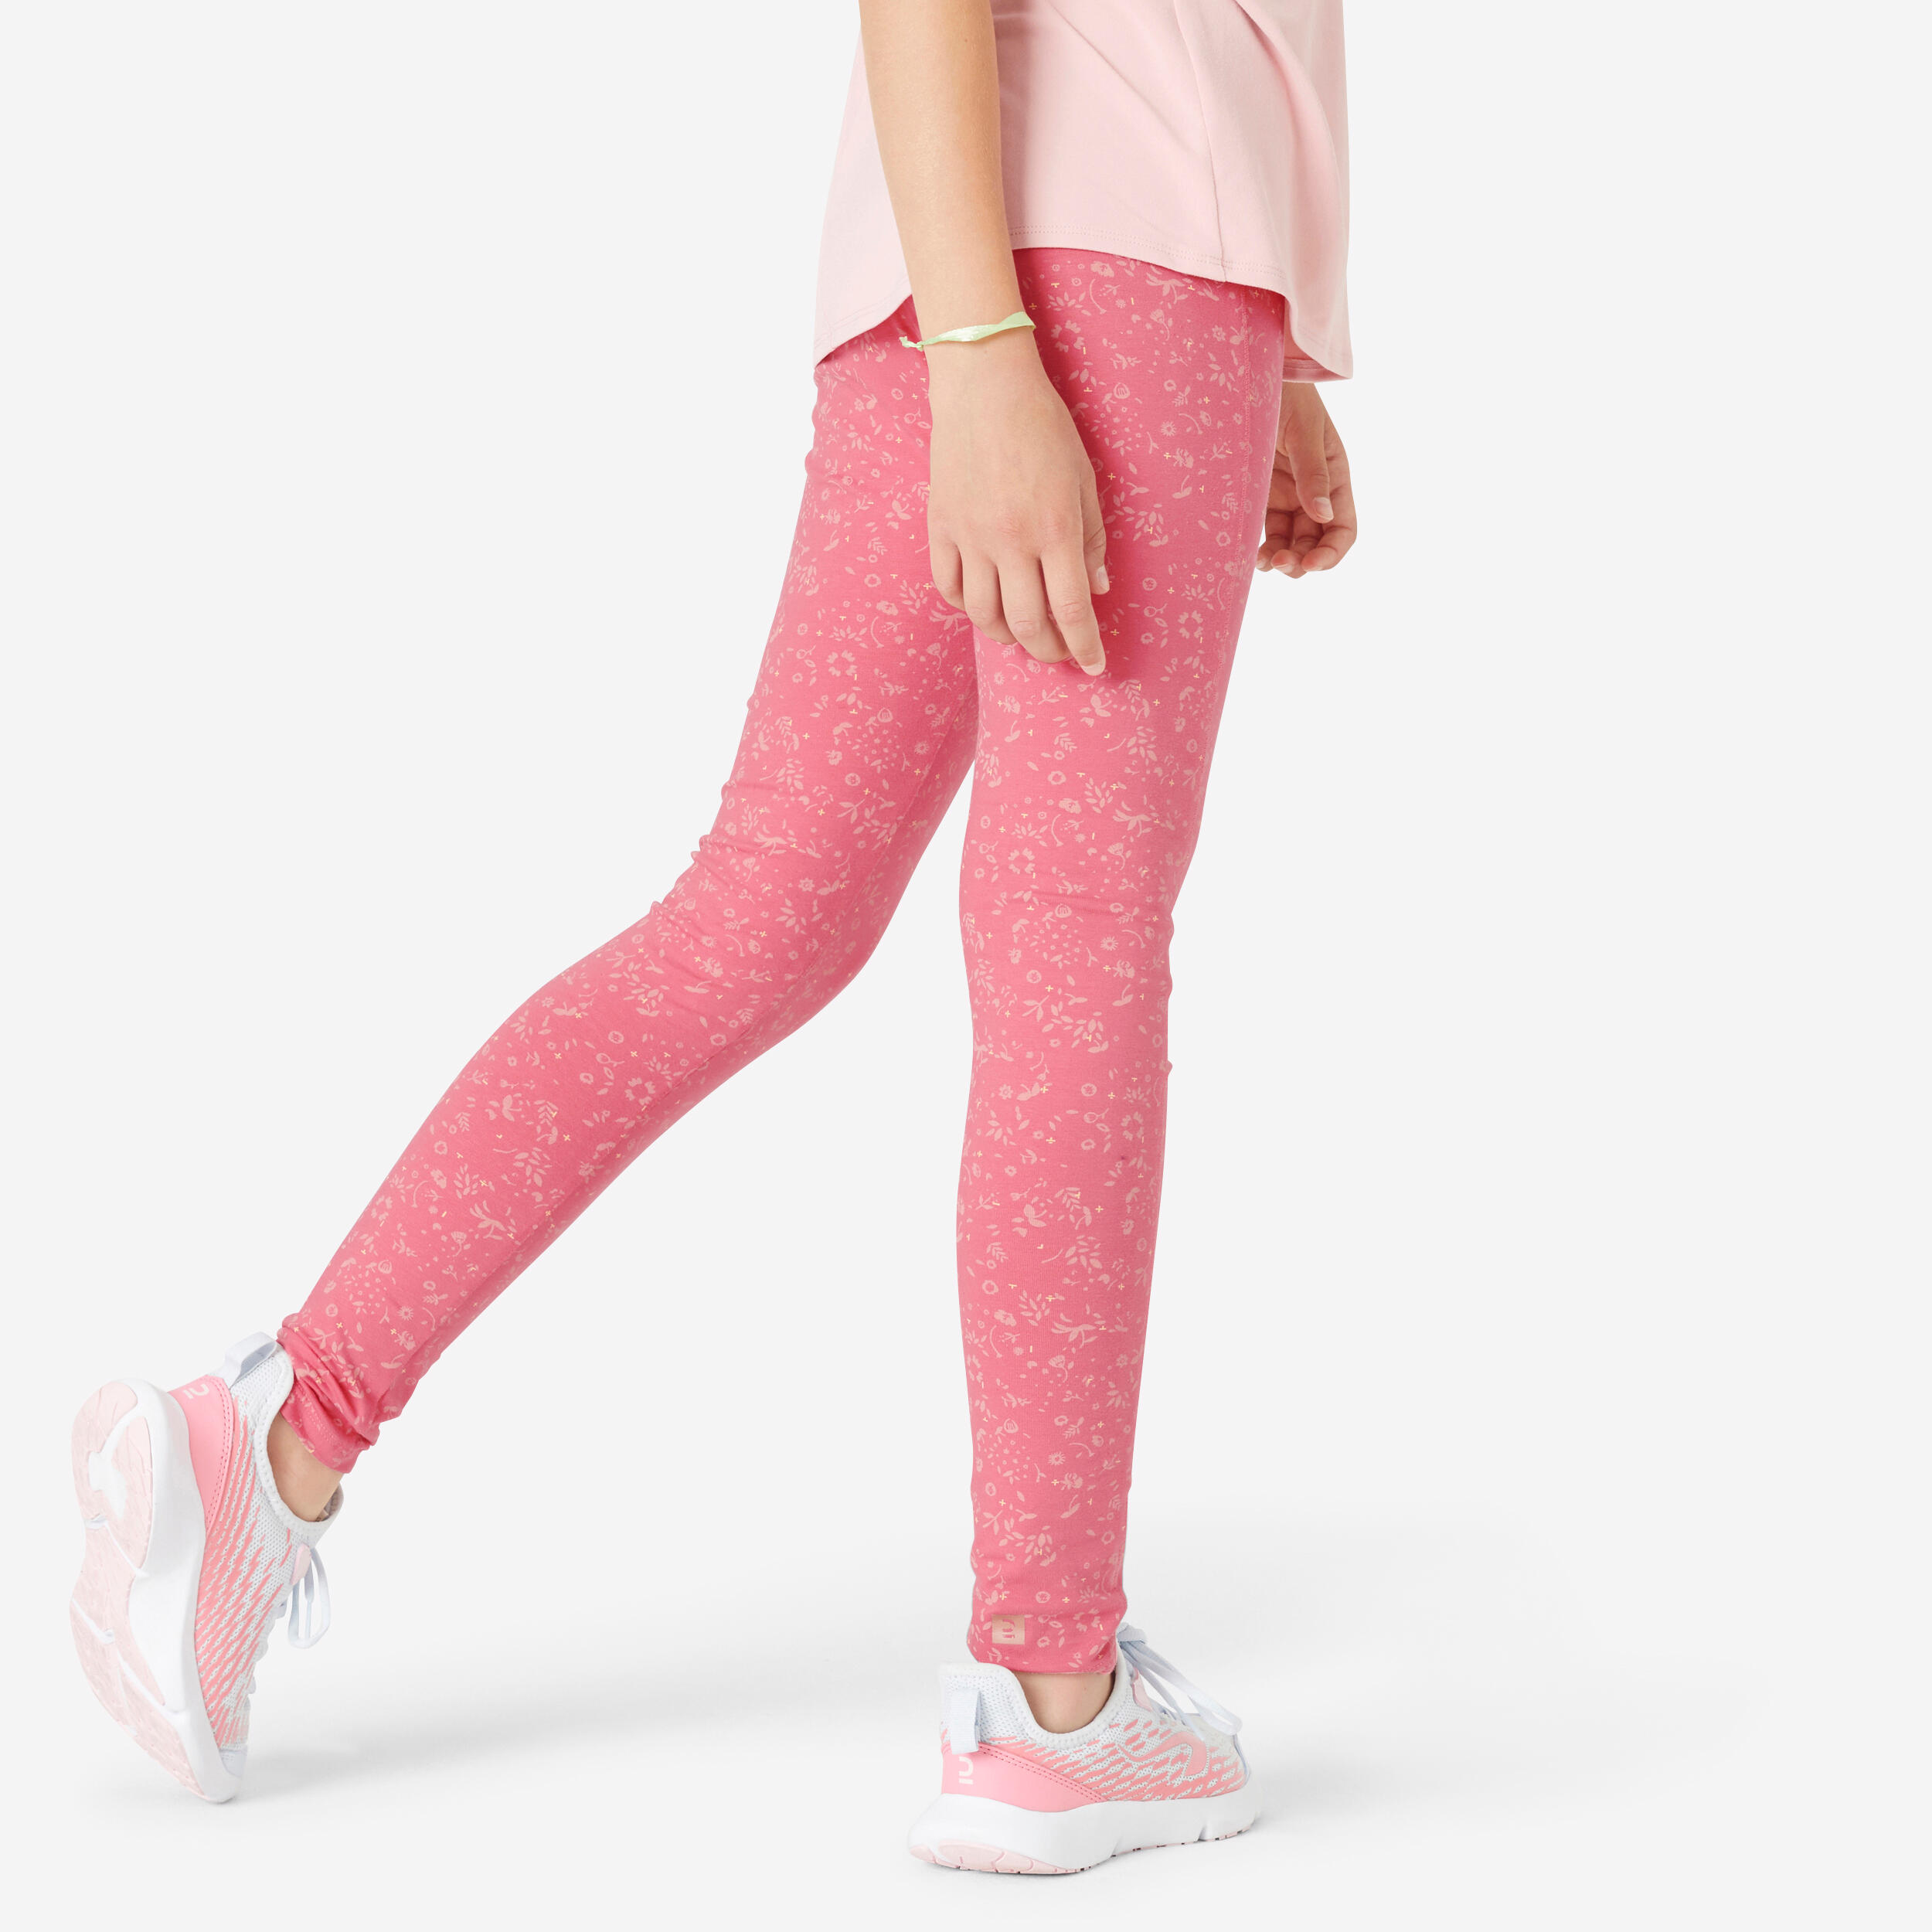 DOMYOS Girls' Cotton Leggings 320 - Pink Print